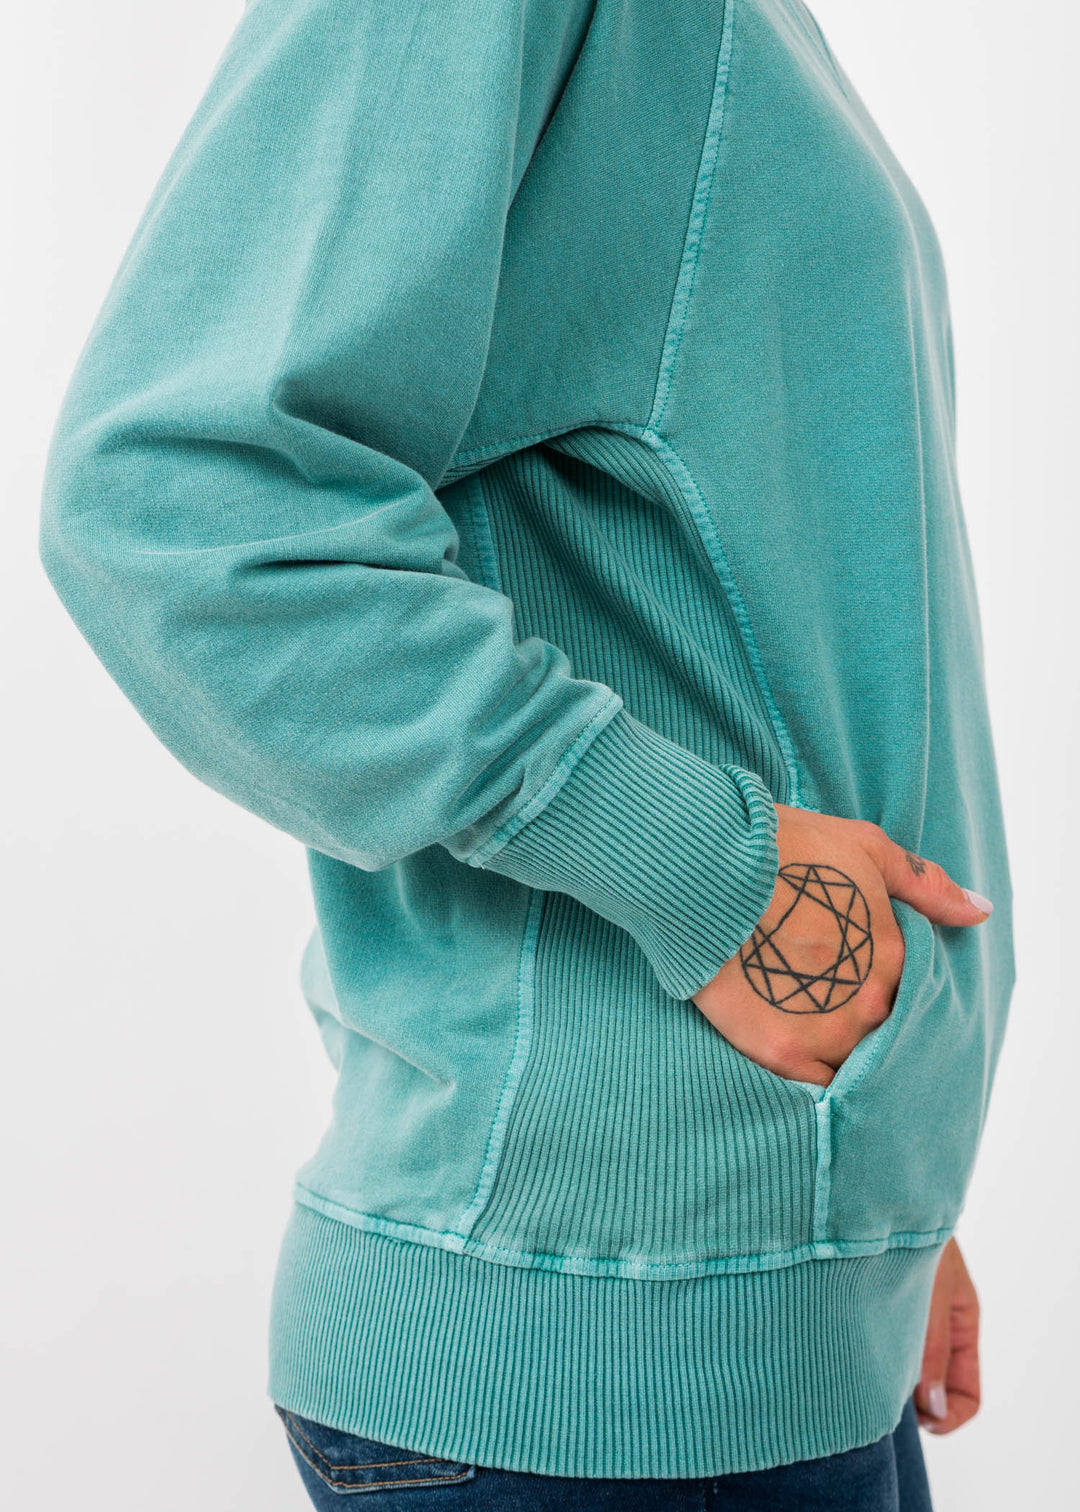 Zen French Terry Sweatshirt (Turquoise)